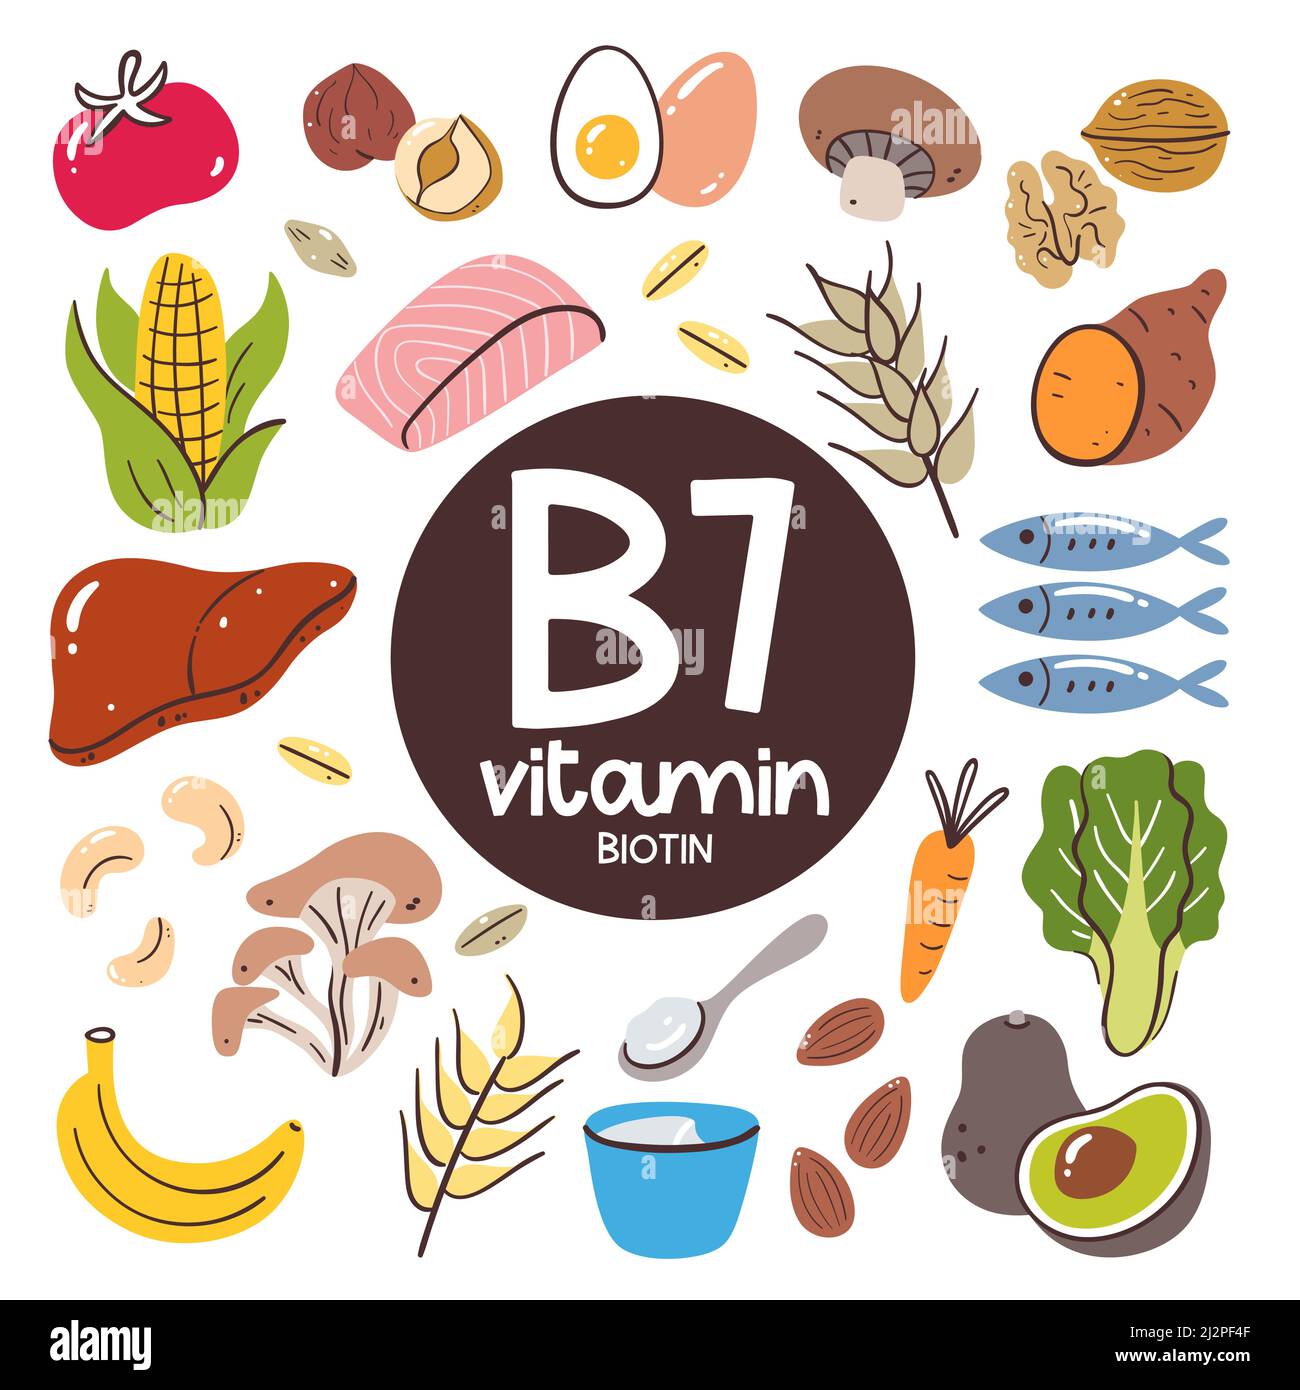 Nahrungsmittel mit hohem Vitamin-B7-Gehalt (Biotin). Zutaten zum Kochen. Obst, Gemüse, Pilze, Nüsse, Milchprodukte, Fisch, Leber. Stock Vektor